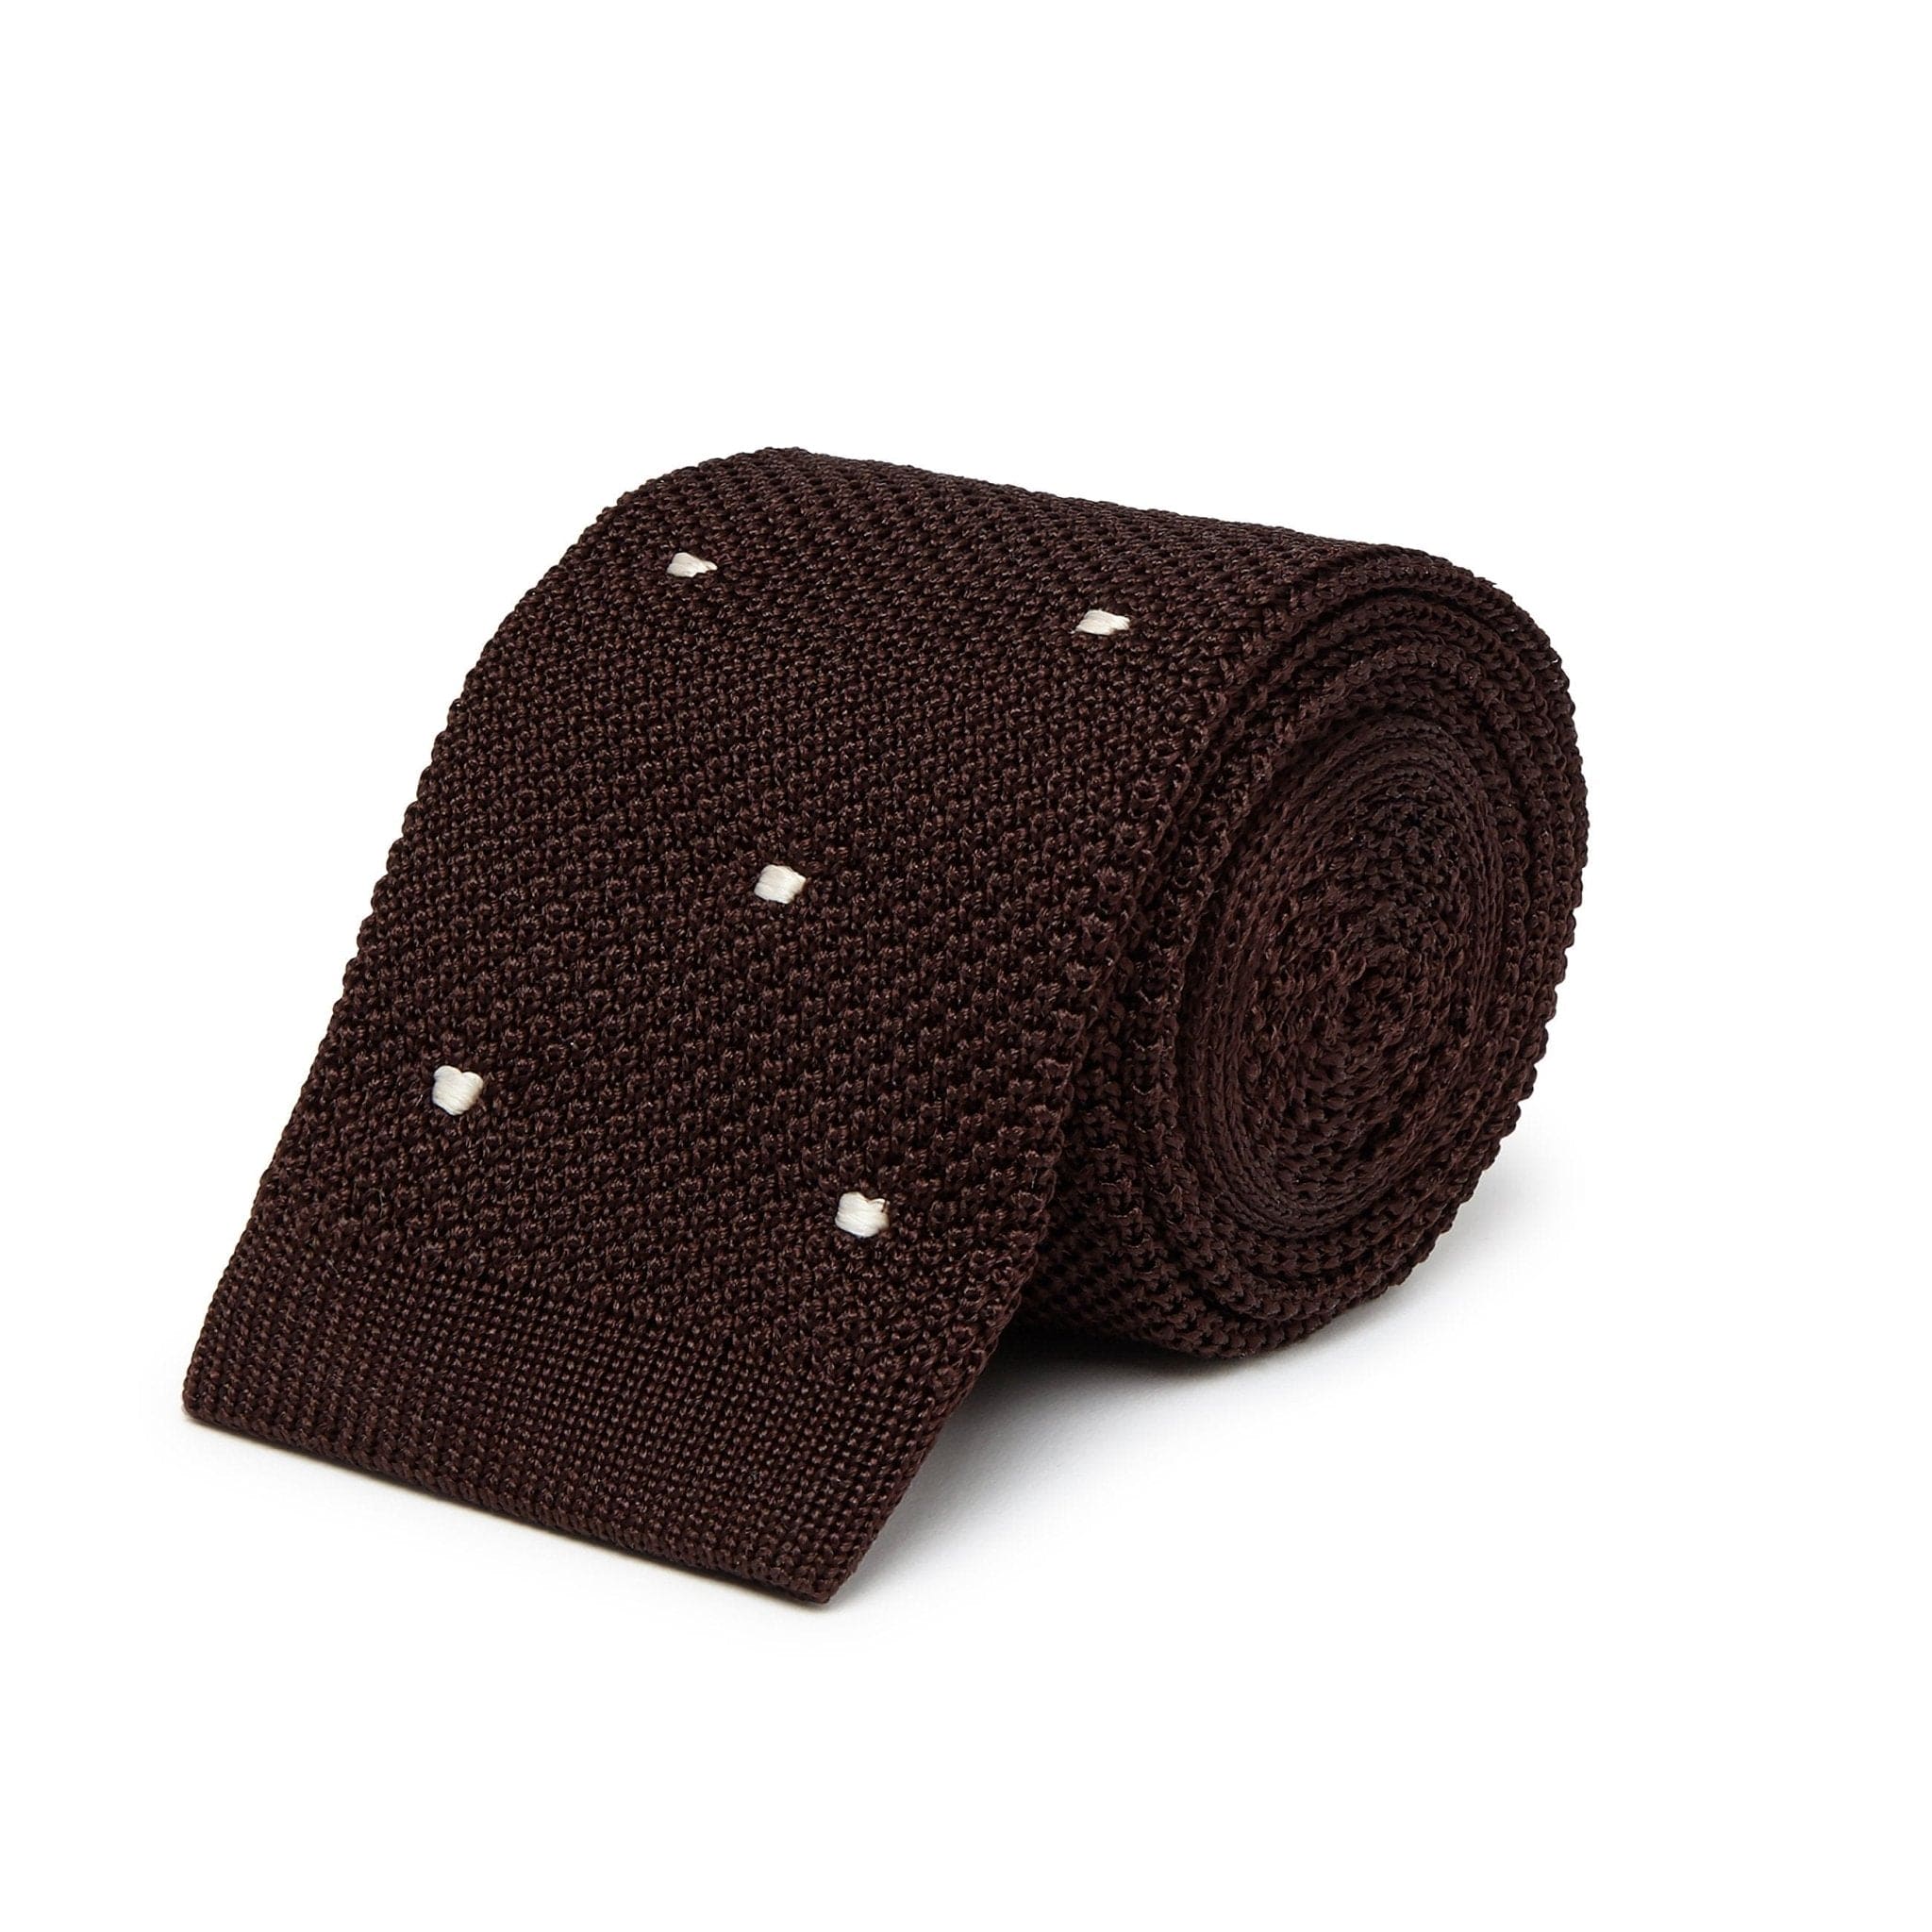 Dark Brown Knitted Silk Tie with White Spots